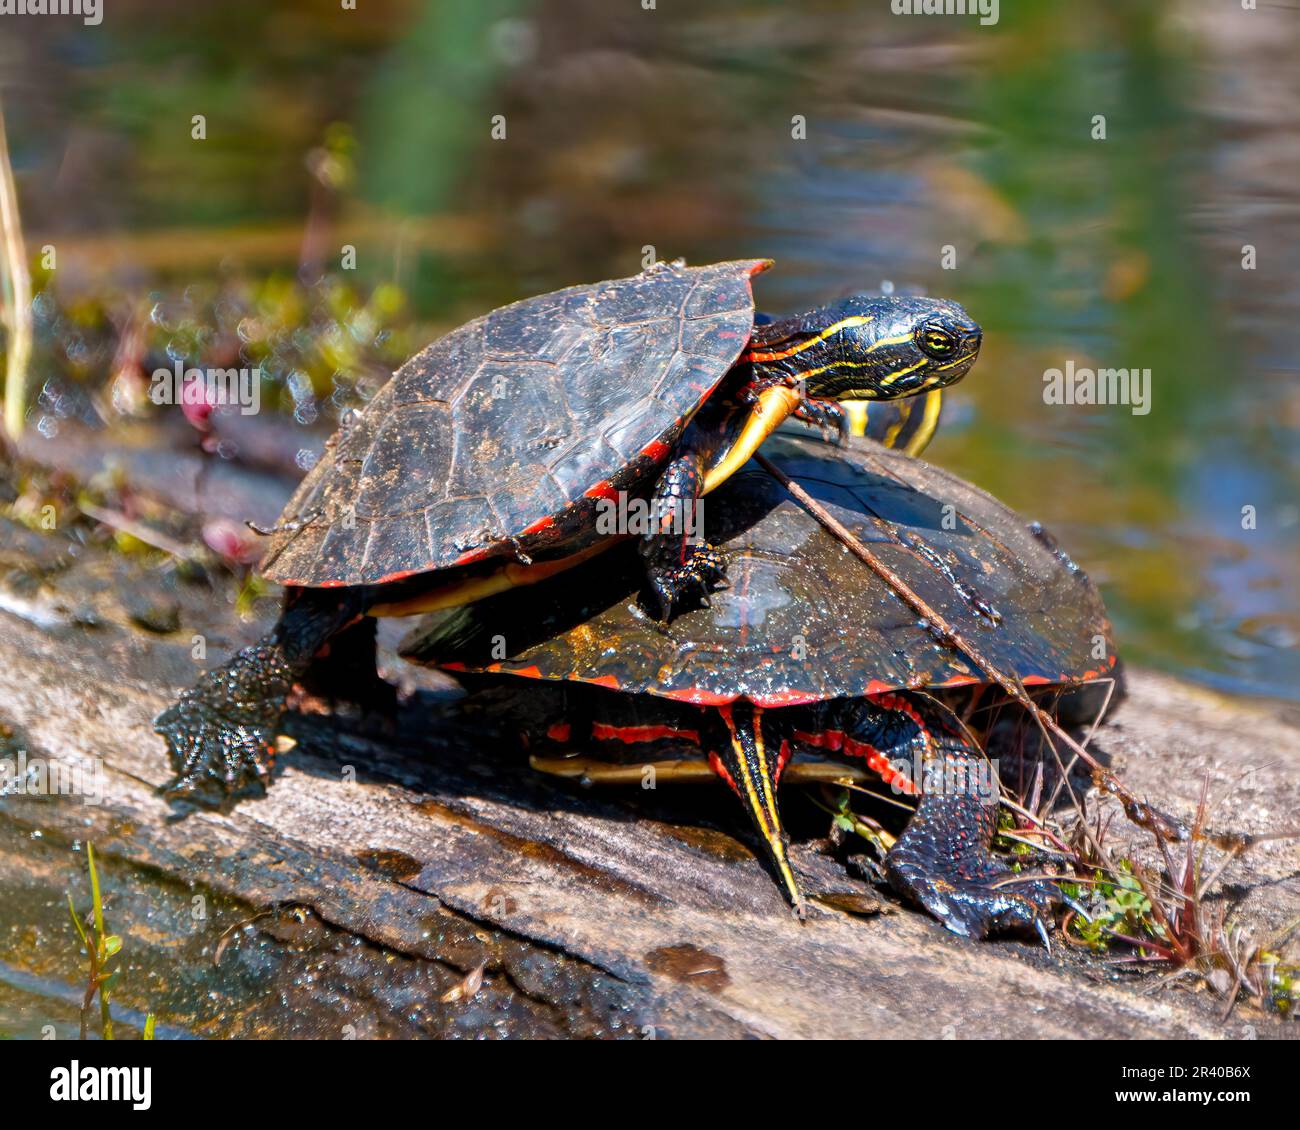 Ein Paar bemalter Schildkröten während der Paarungszeit interagiert auf einem Baumstamm mit verschwommenem Wasserhintergrund in ihrer Umgebung und ihrem Lebensraum. Schildkrötenfoto Stockfoto